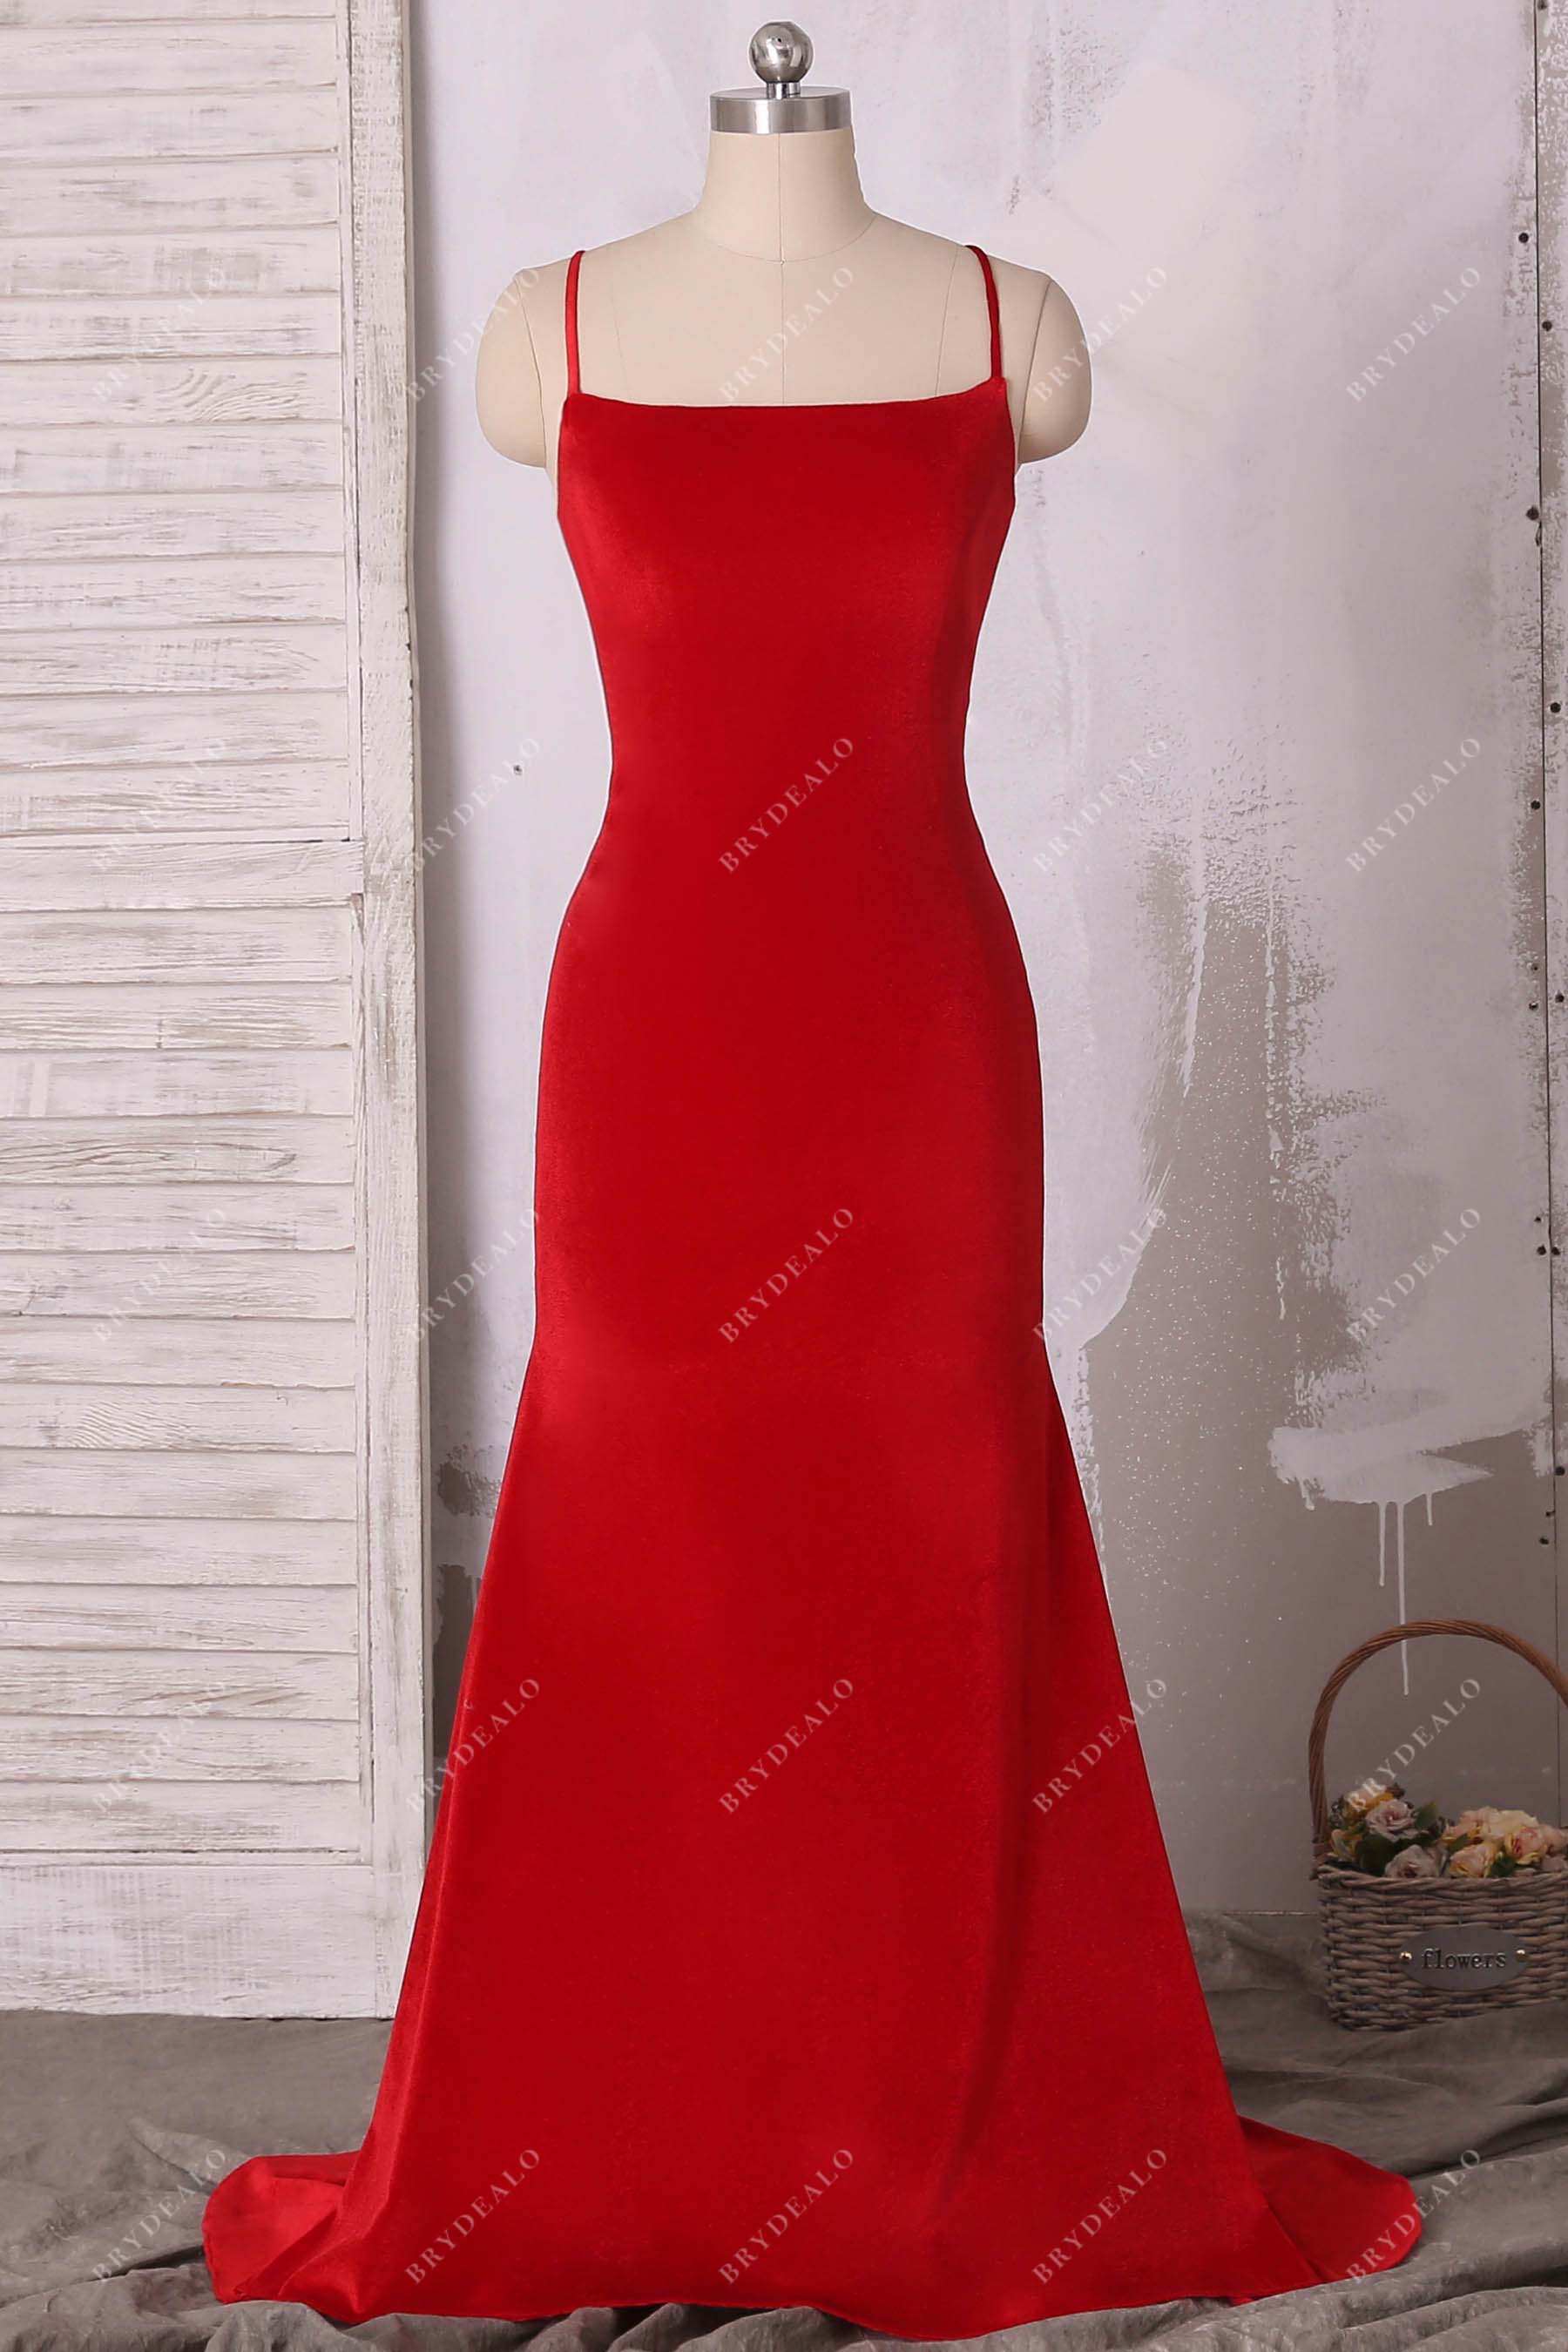 thin strap sleeveless red velvet mermaid prom dress